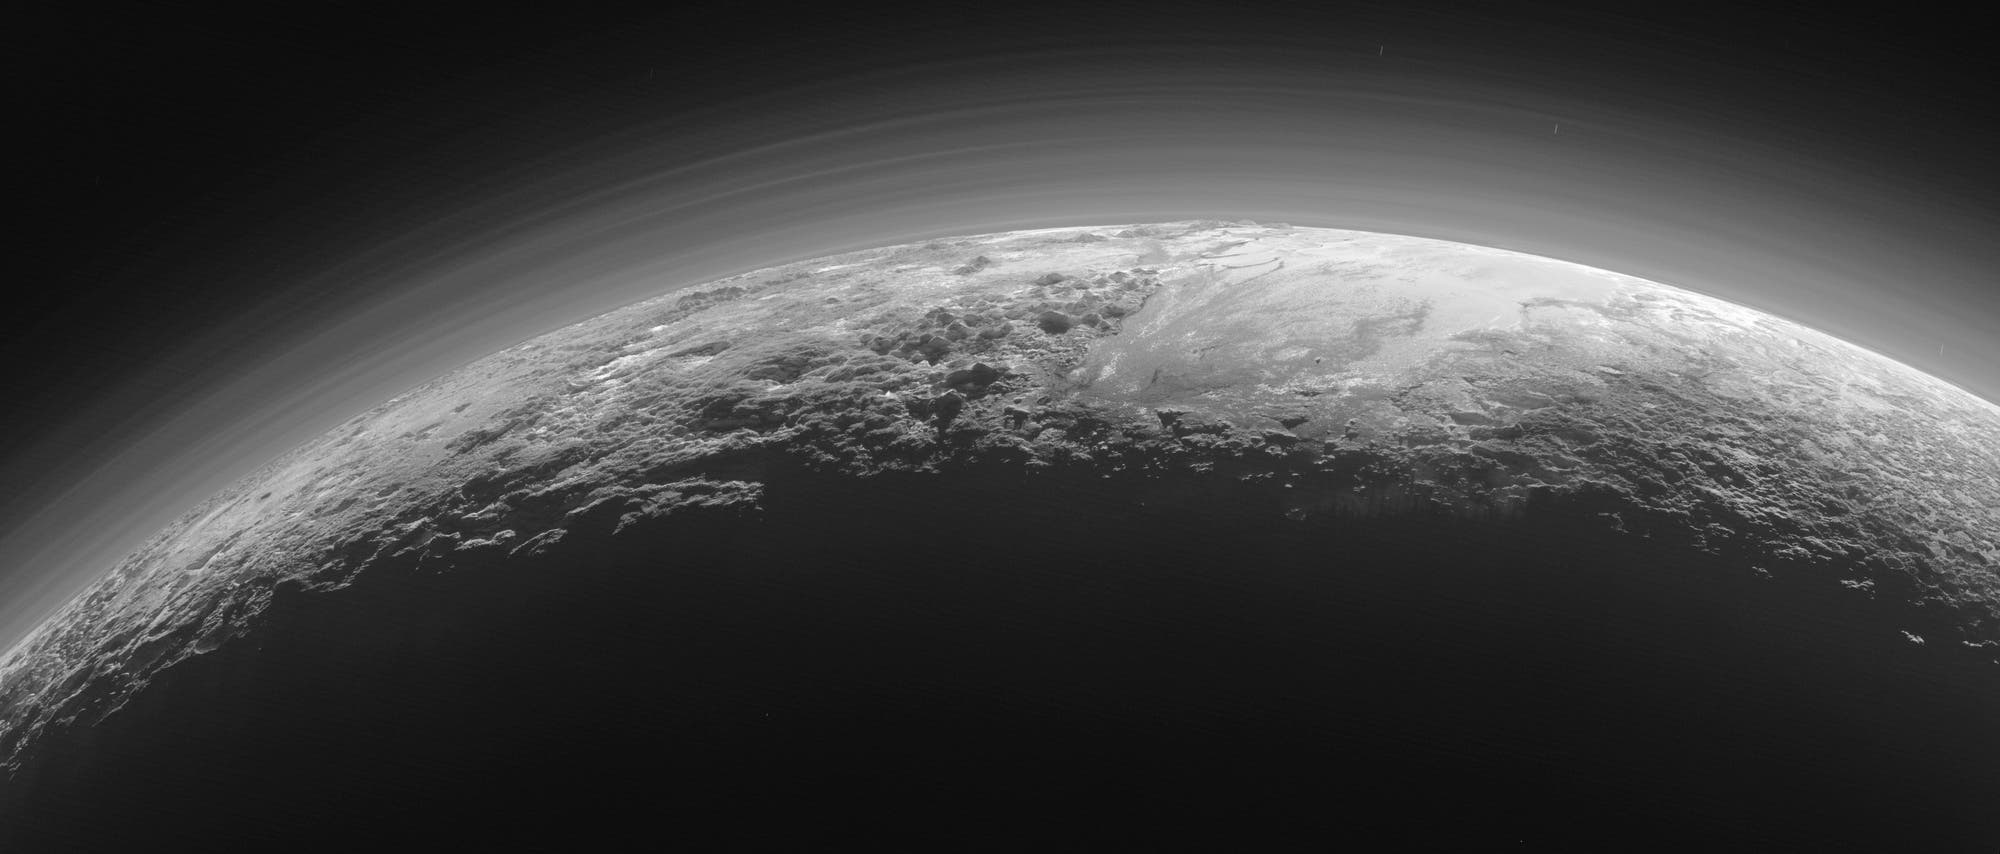 Ein atemberaubendes Bild der Pluto-Sichel